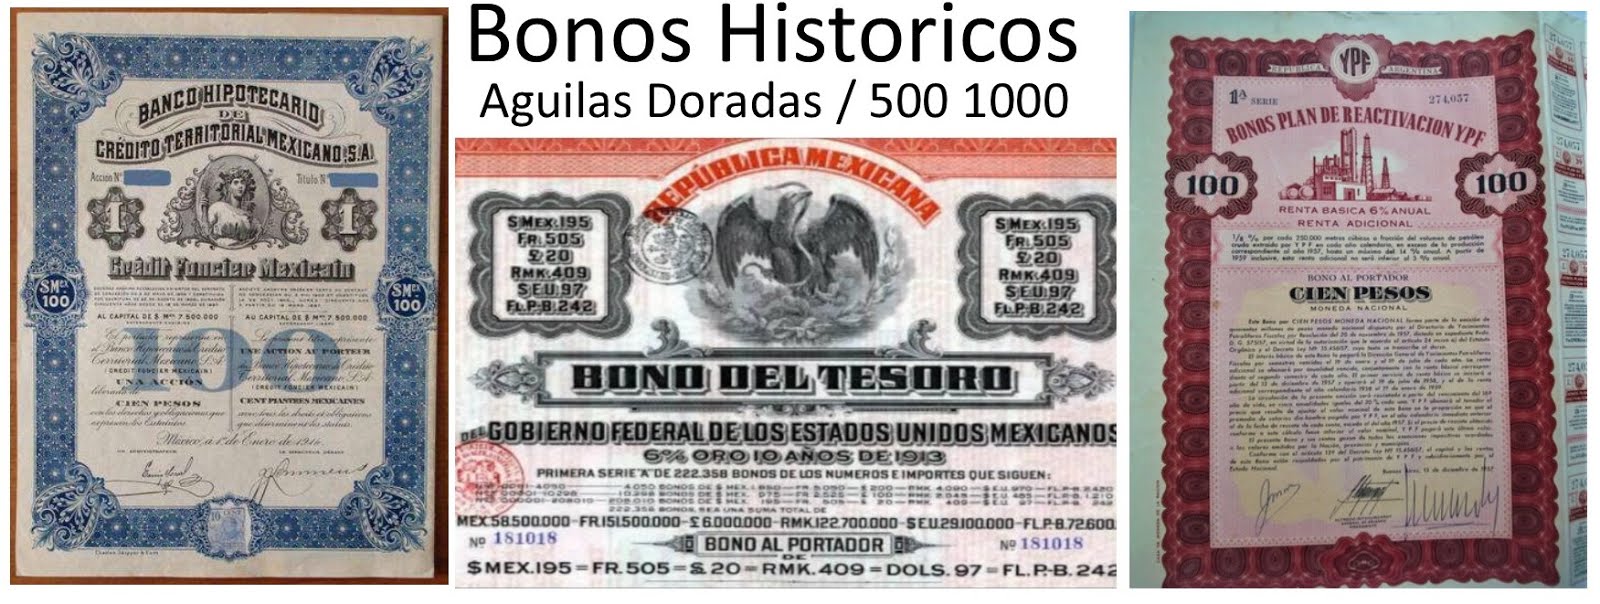 Bonos Historicos de Deudas